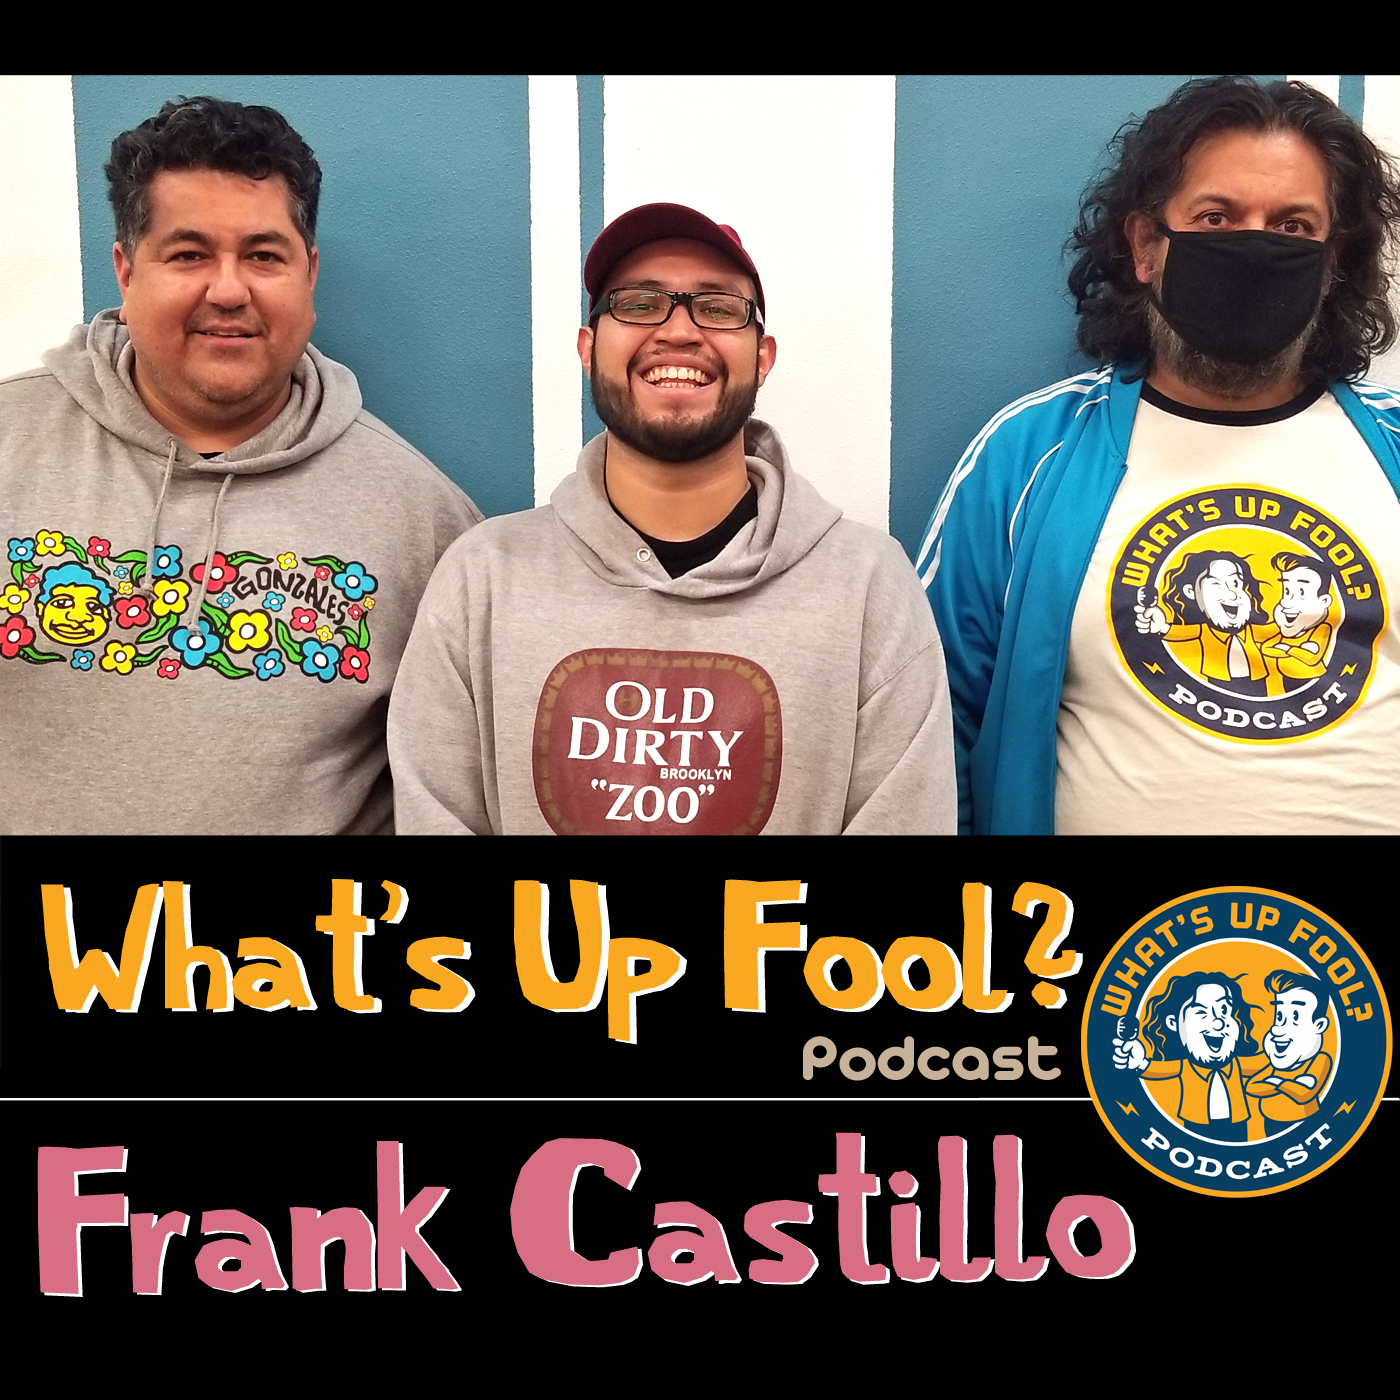 Ep 283 - Frank Castillo Returns